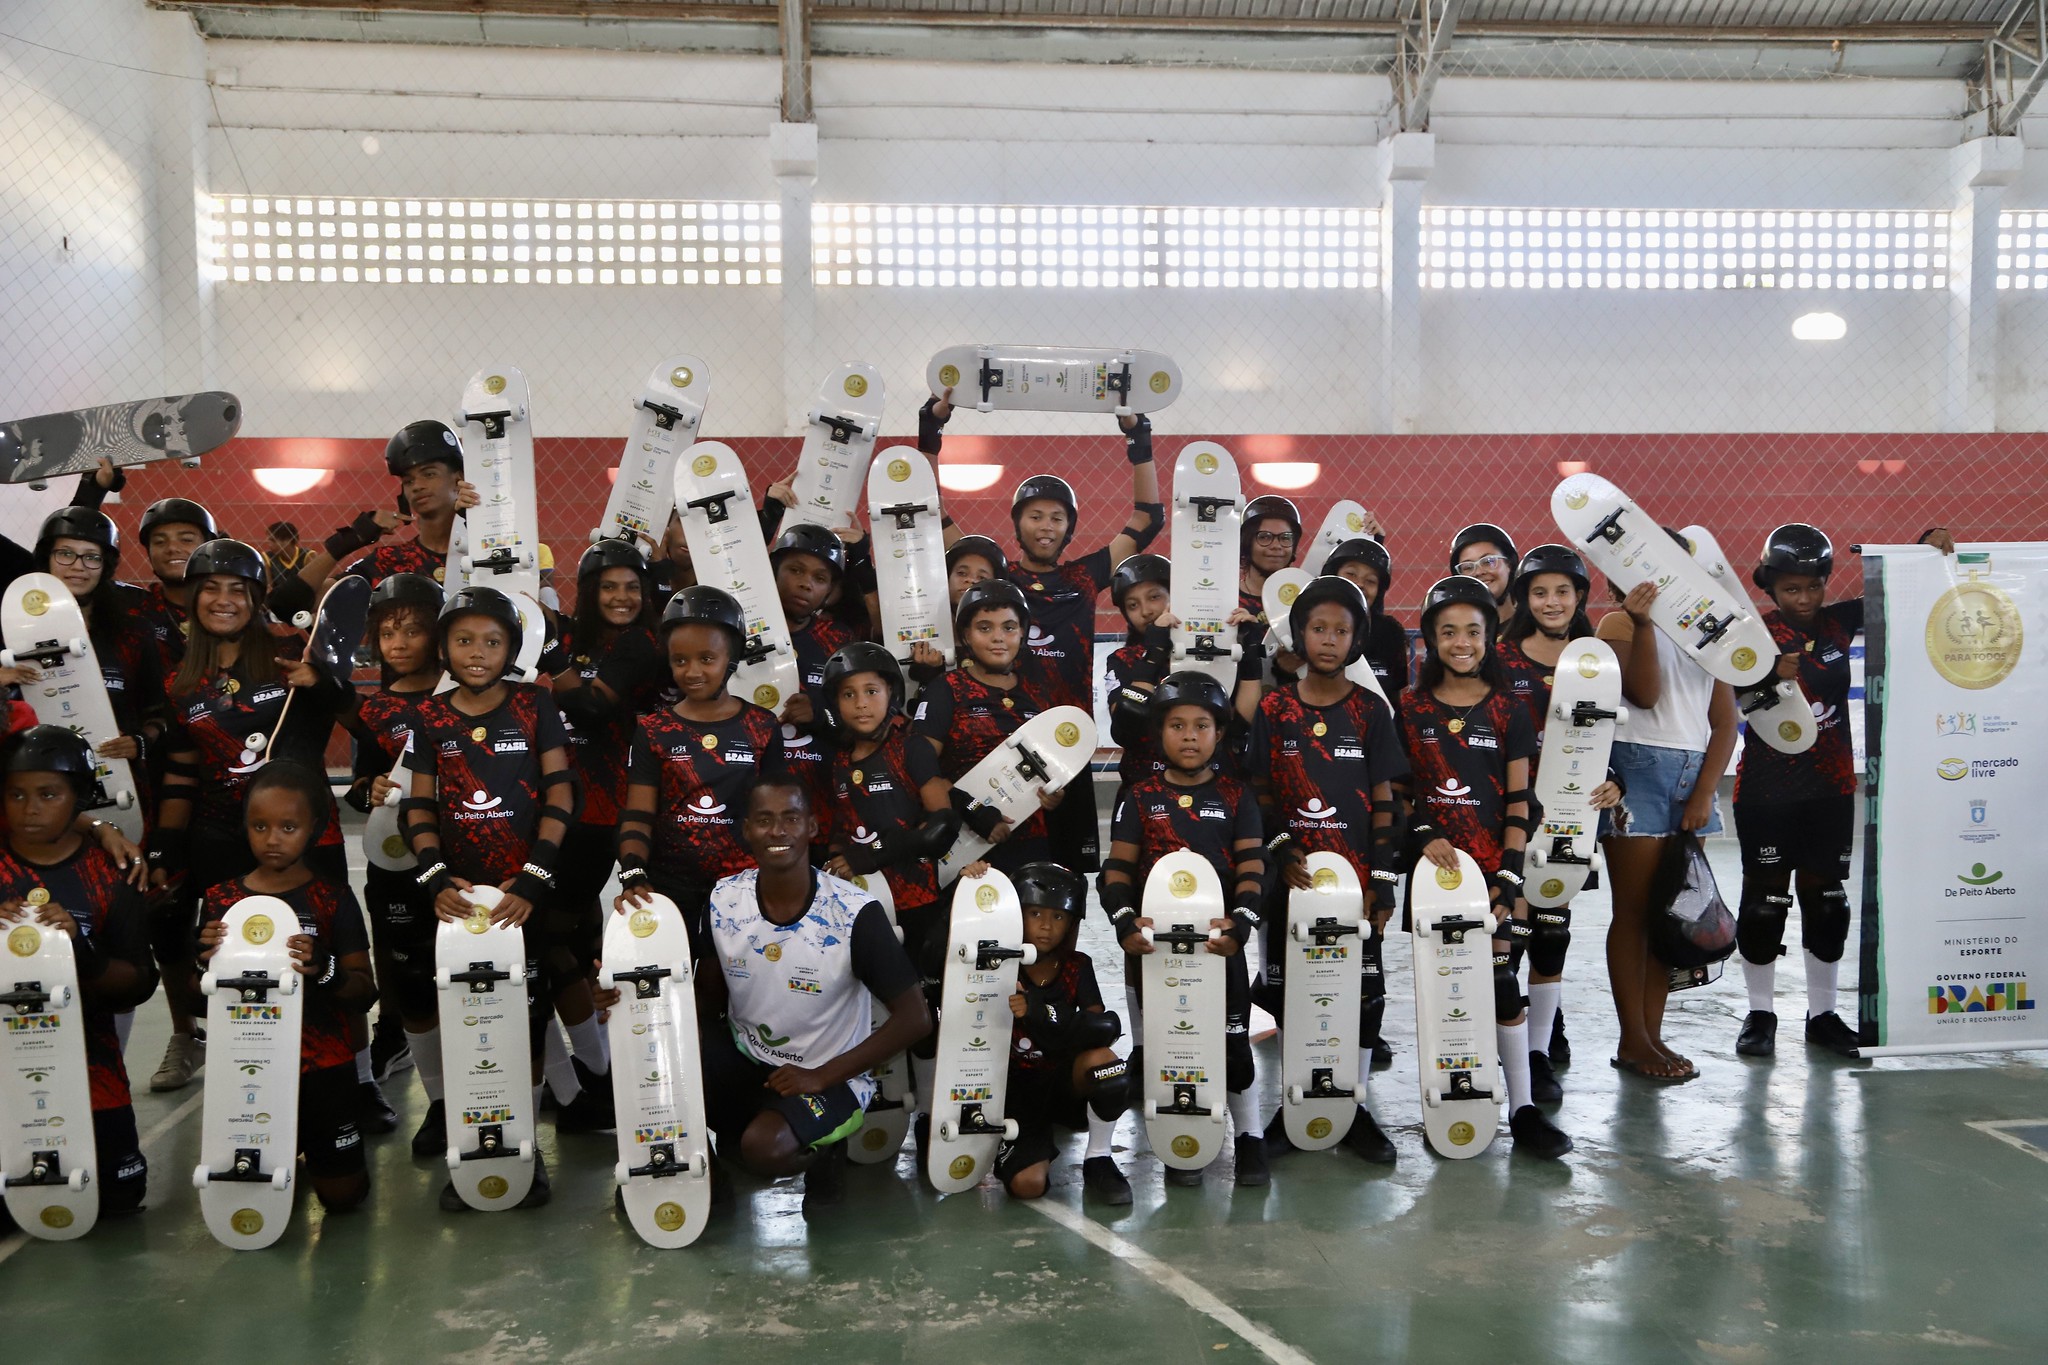 Projeto Esportes Ol�mpicos para Todos � lan�ado em Lauro de Freitas; estudantes recebem material para aulas de skate